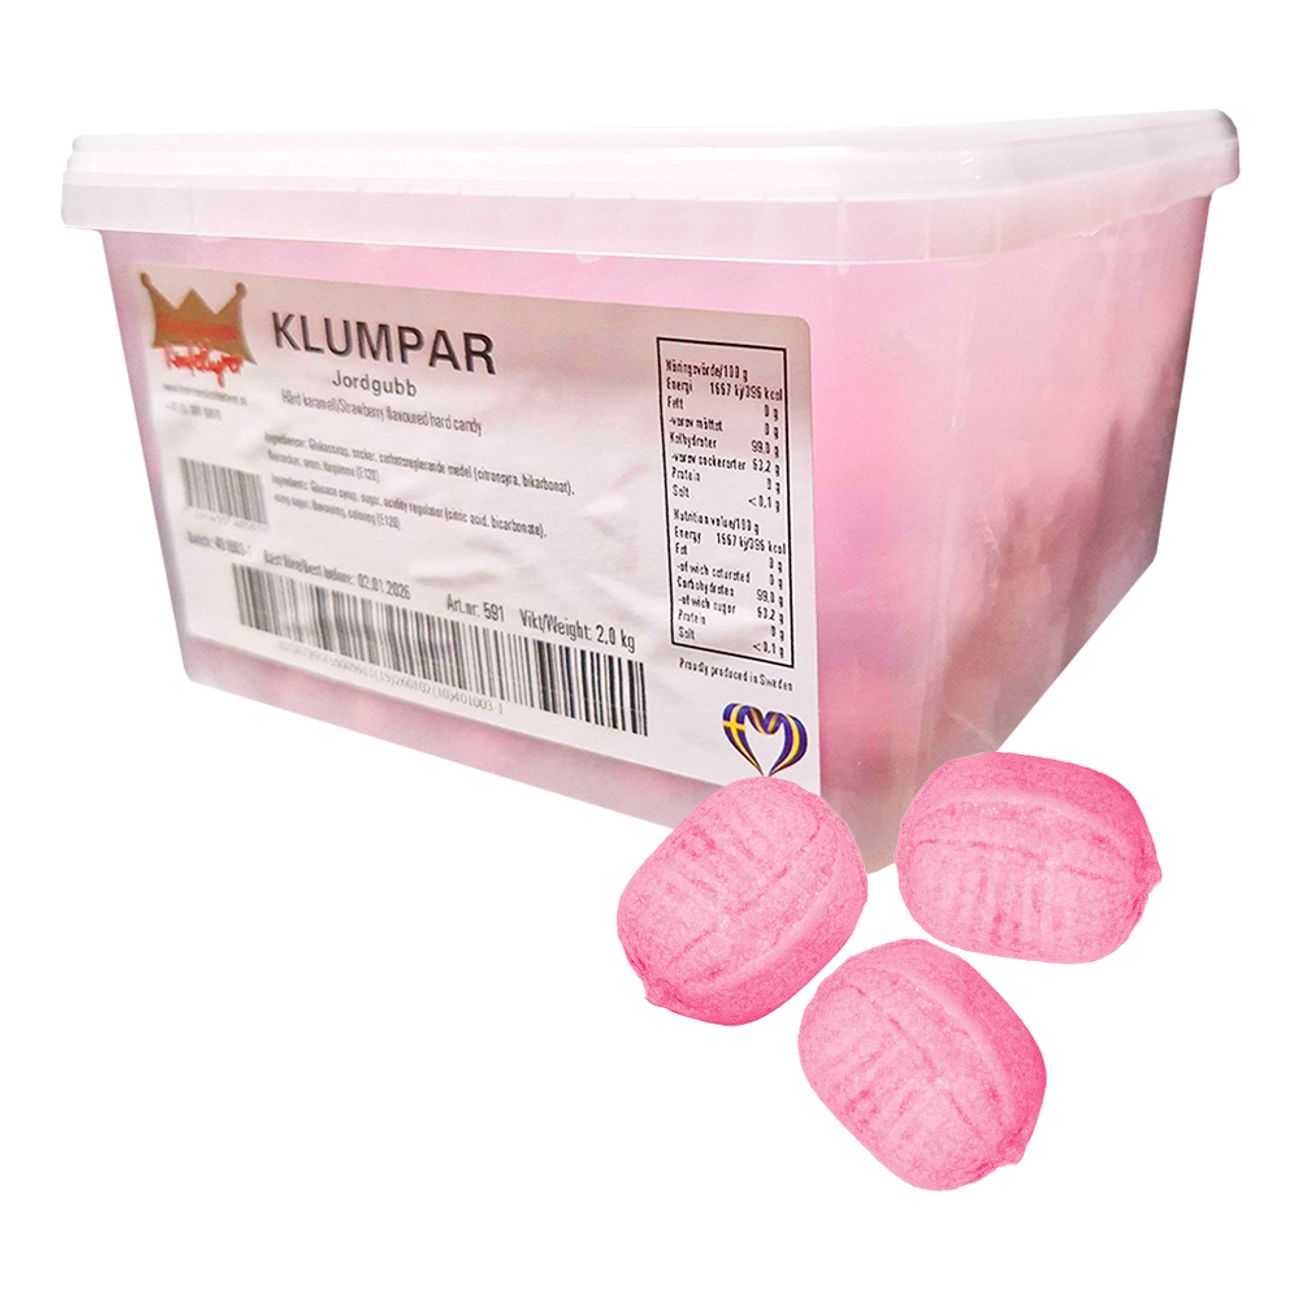 klumpar-jordgubb-100952-1